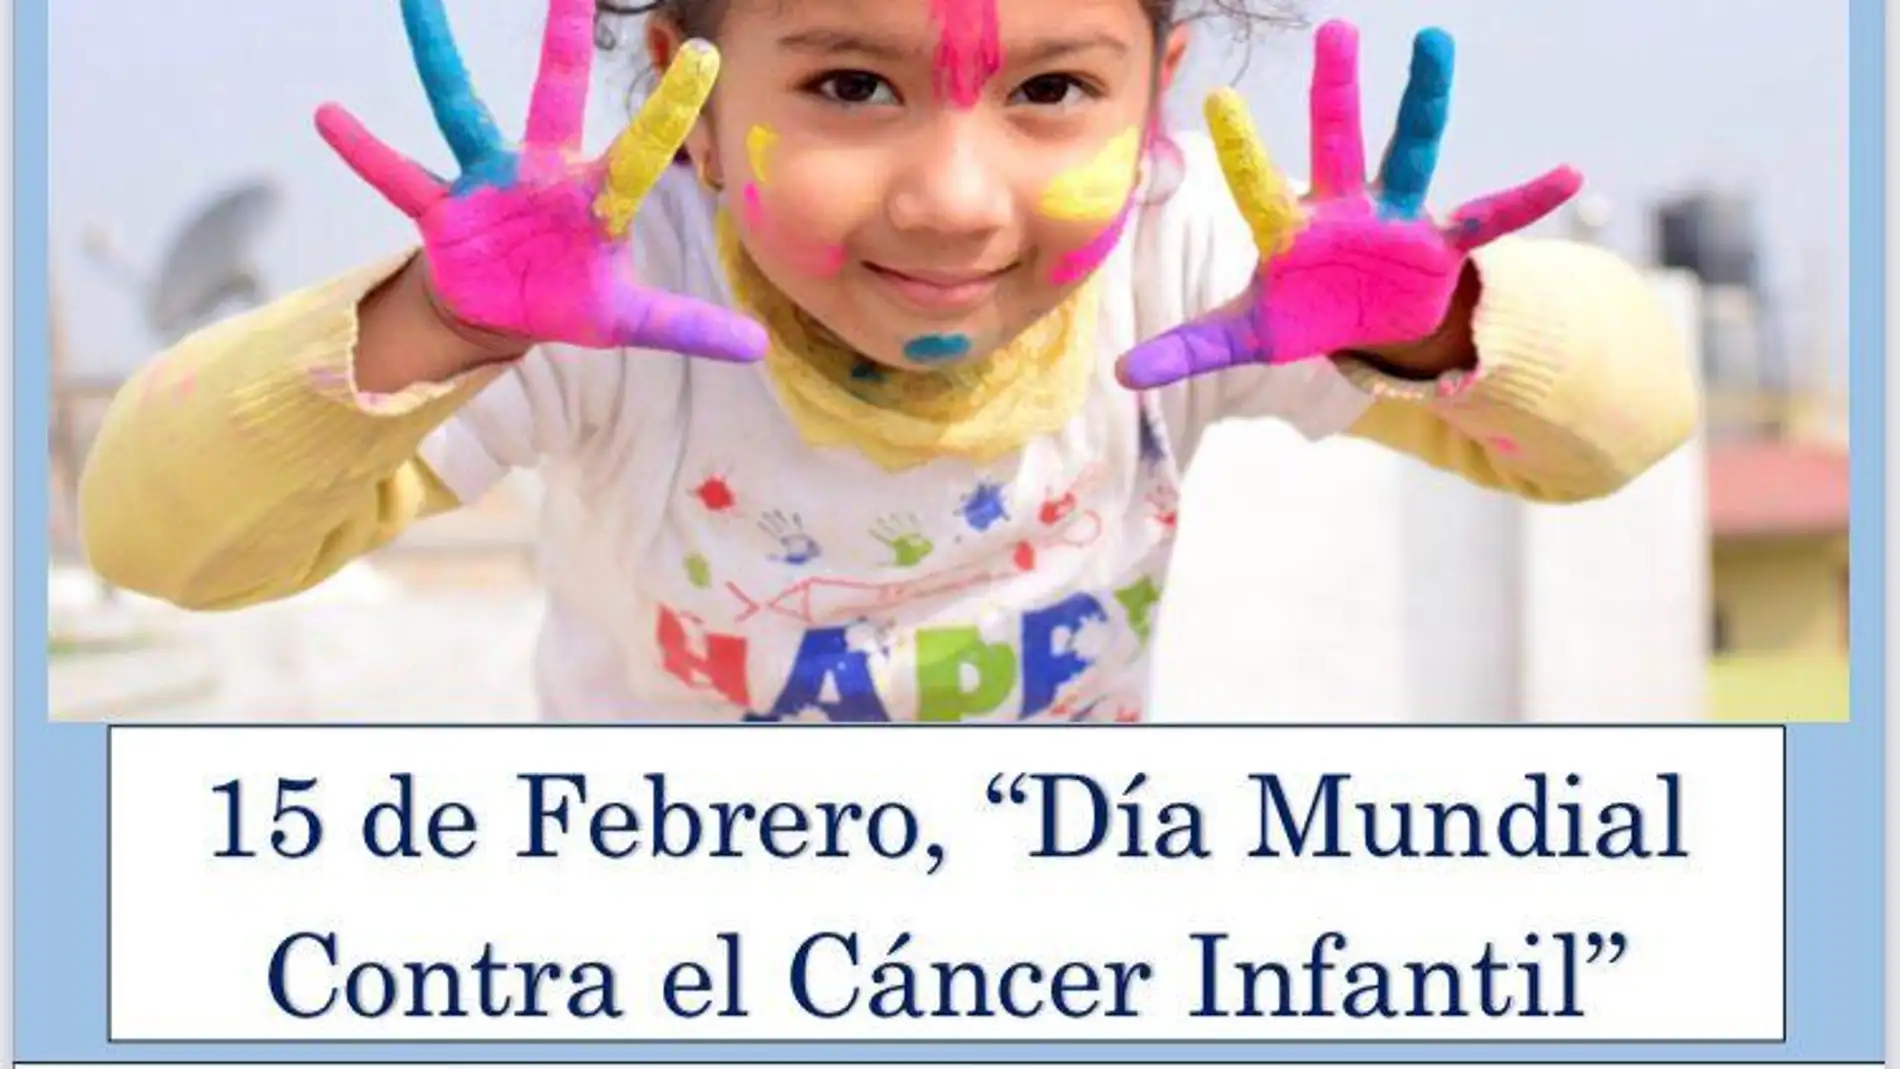 Asociación para la lucha contra el cáncer, tenemos el deber de concienciar y dar visibilidad a esta enfermedad que tanto hace sufrir a padres, niños y familiares 